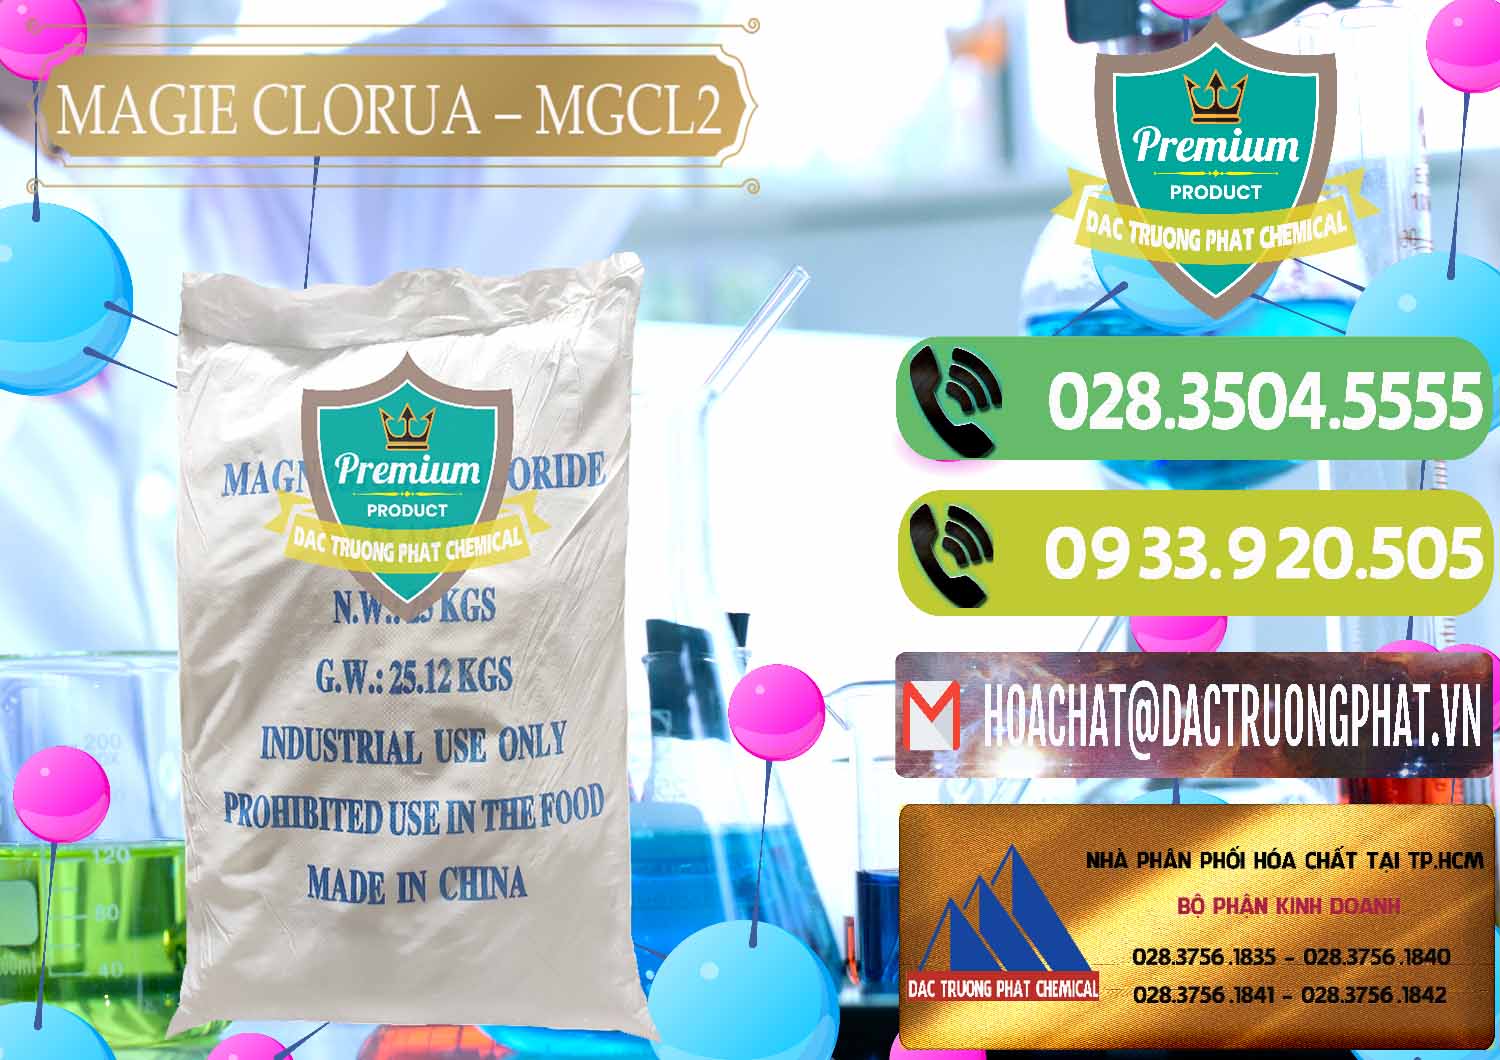 Công ty cung ứng và bán Magie Clorua – MGCL2 96% Dạng Vảy Trung Quốc China - 0091 - Chuyên kinh doanh và phân phối hóa chất tại TP.HCM - hoachatmientay.vn